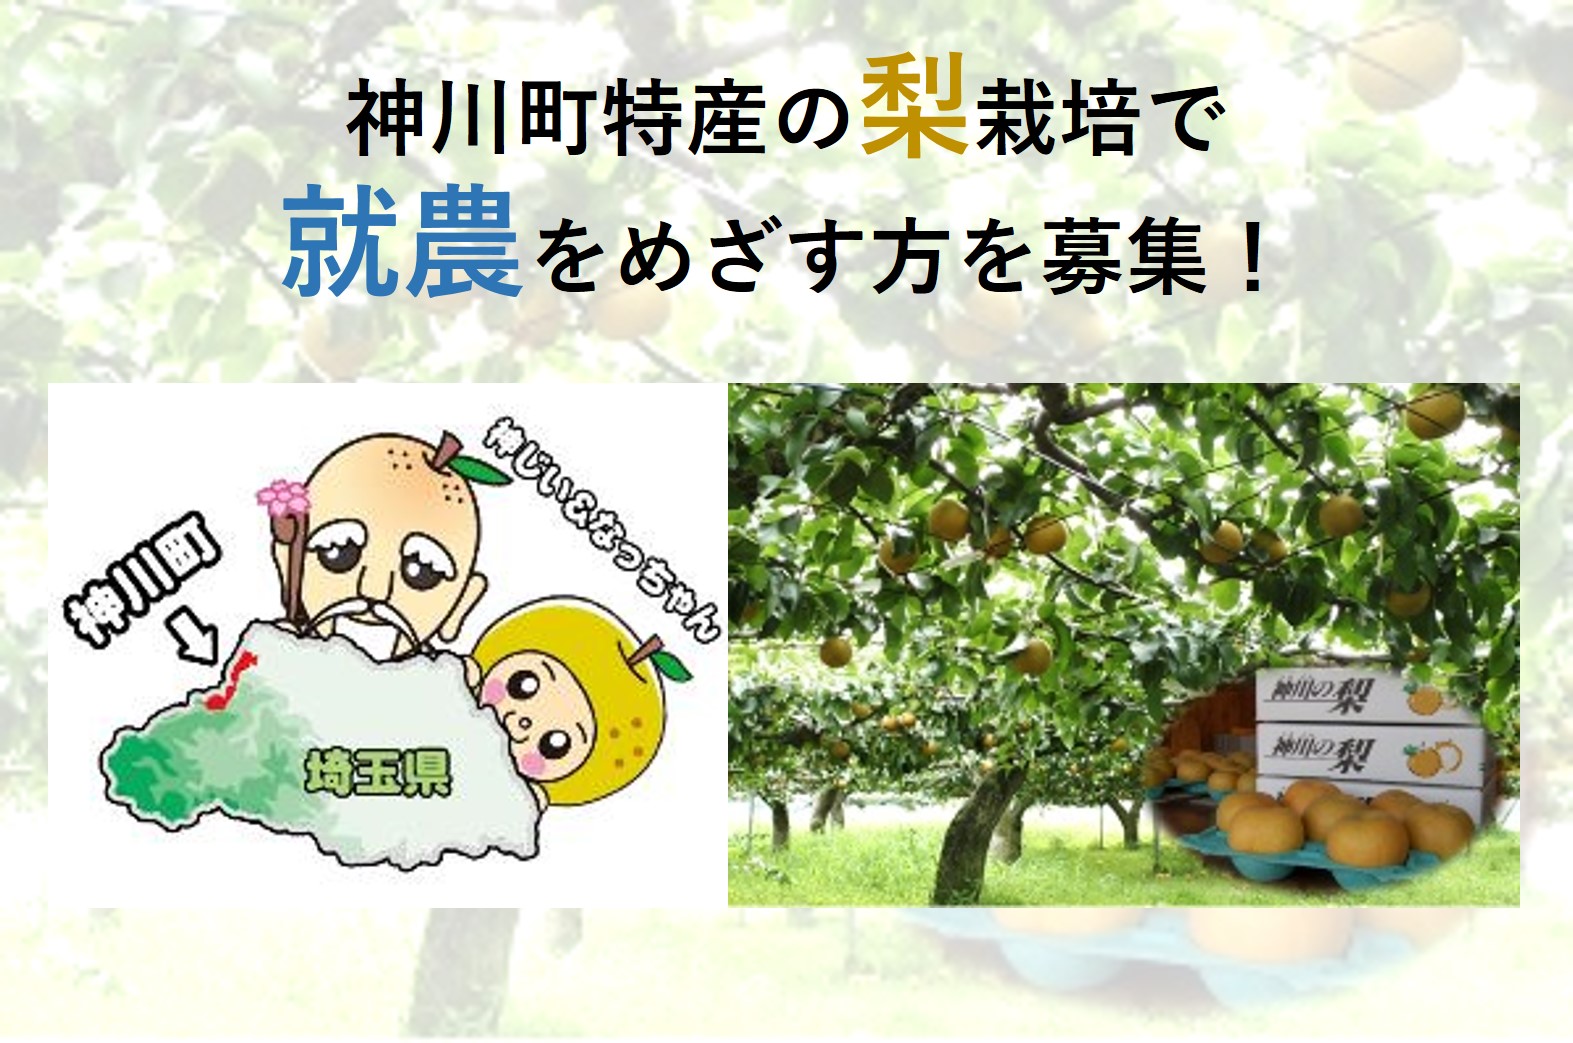 神川町 地域おこし協力隊員募集（梨栽培） | 移住関連イベント情報